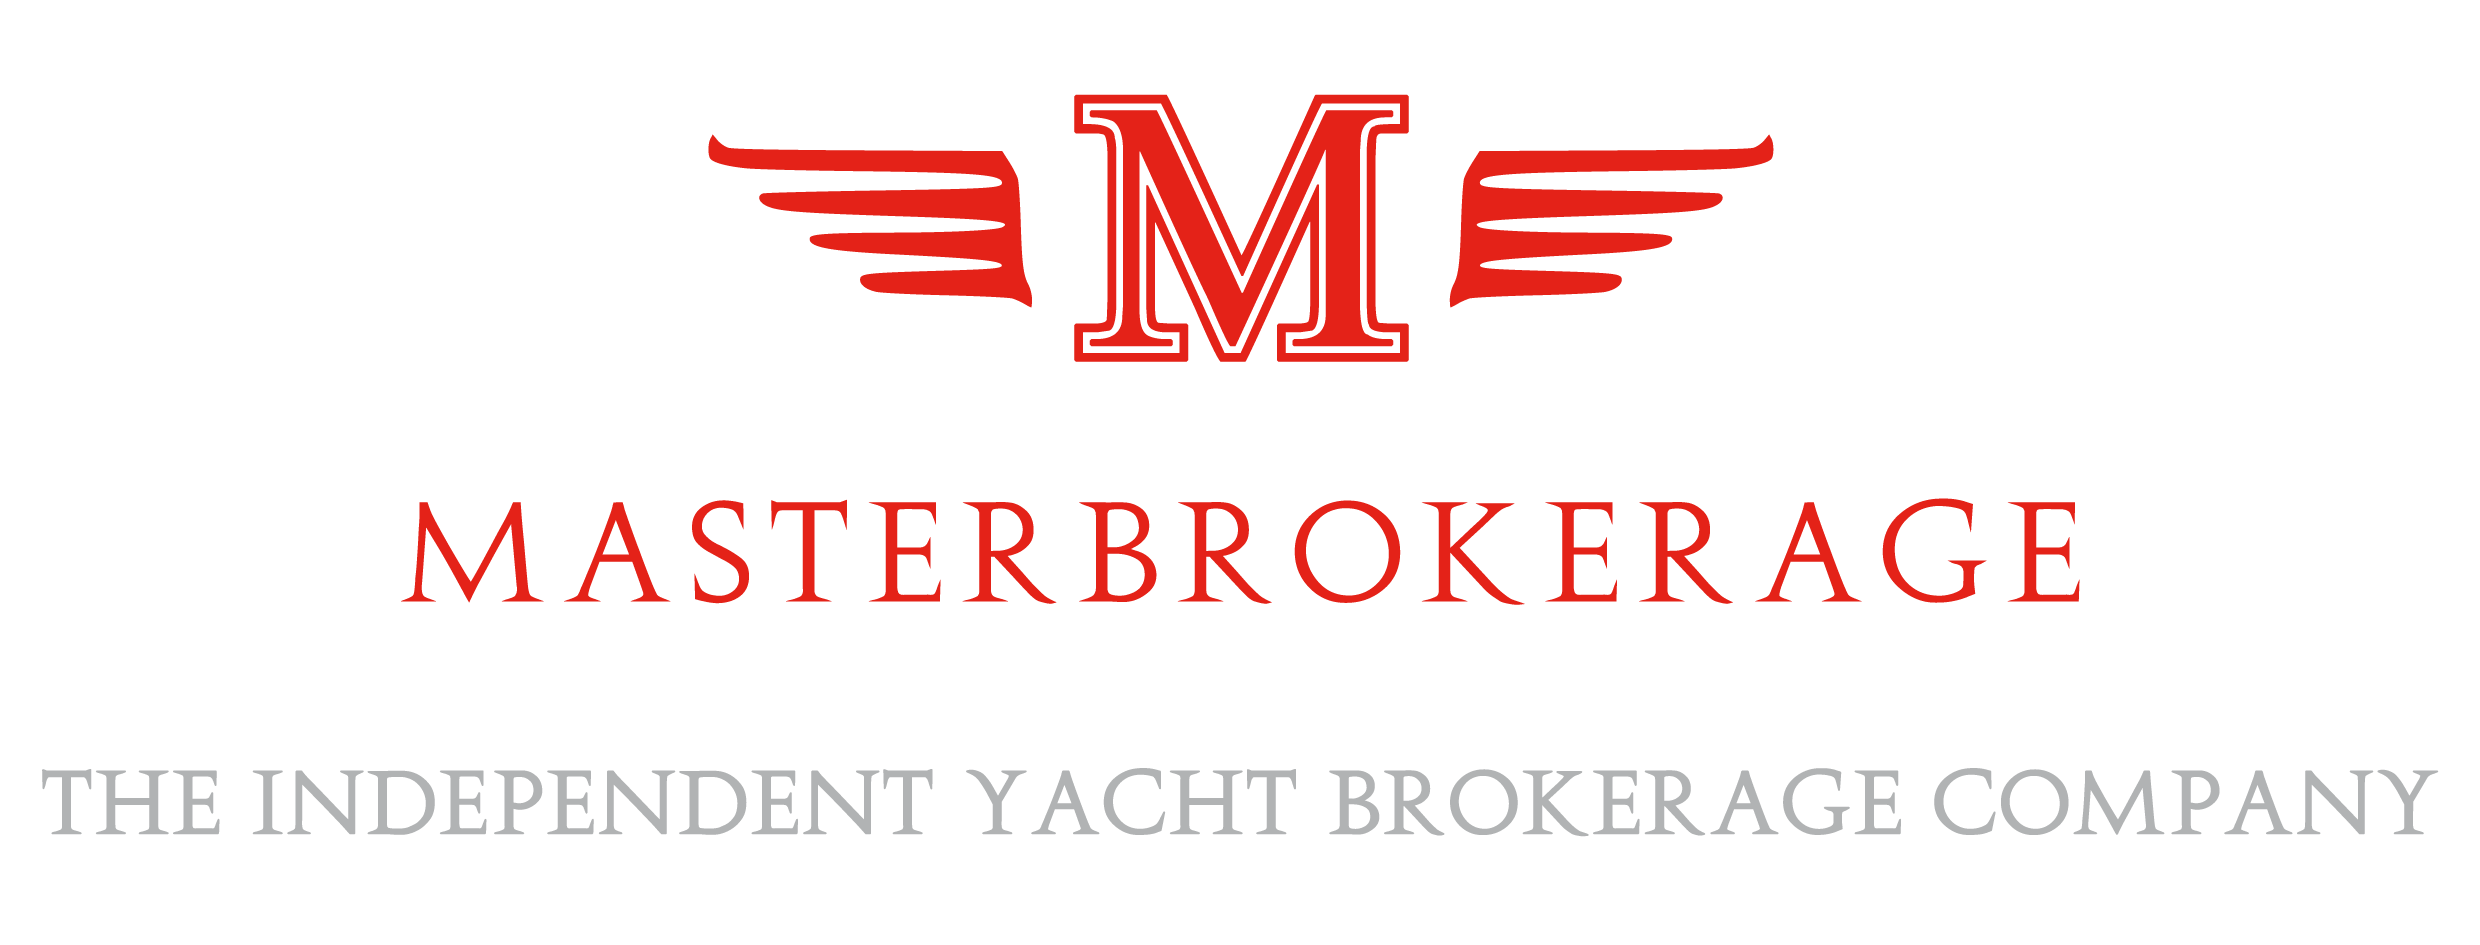 Logo Master Brokerage srl